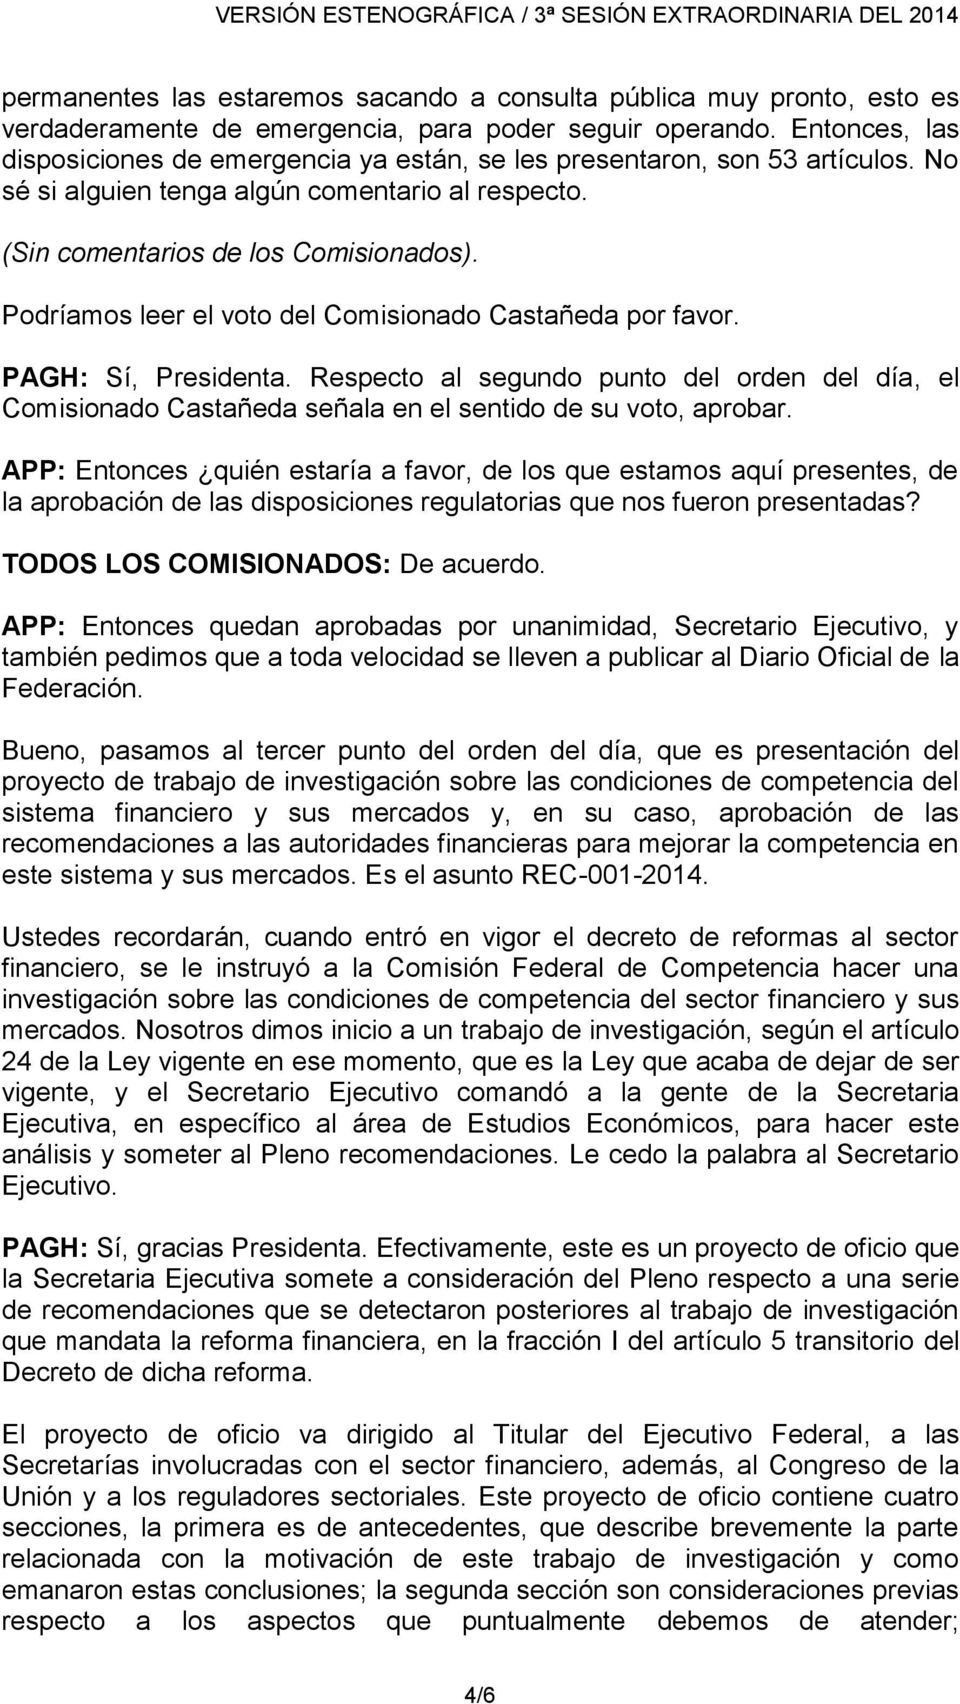 Podríamos leer el voto del Comisionado Castañeda por favor. PAGH: Sí, Presidenta. Respecto al segundo punto del orden del día, el Comisionado Castañeda señala en el sentido de su voto, aprobar.